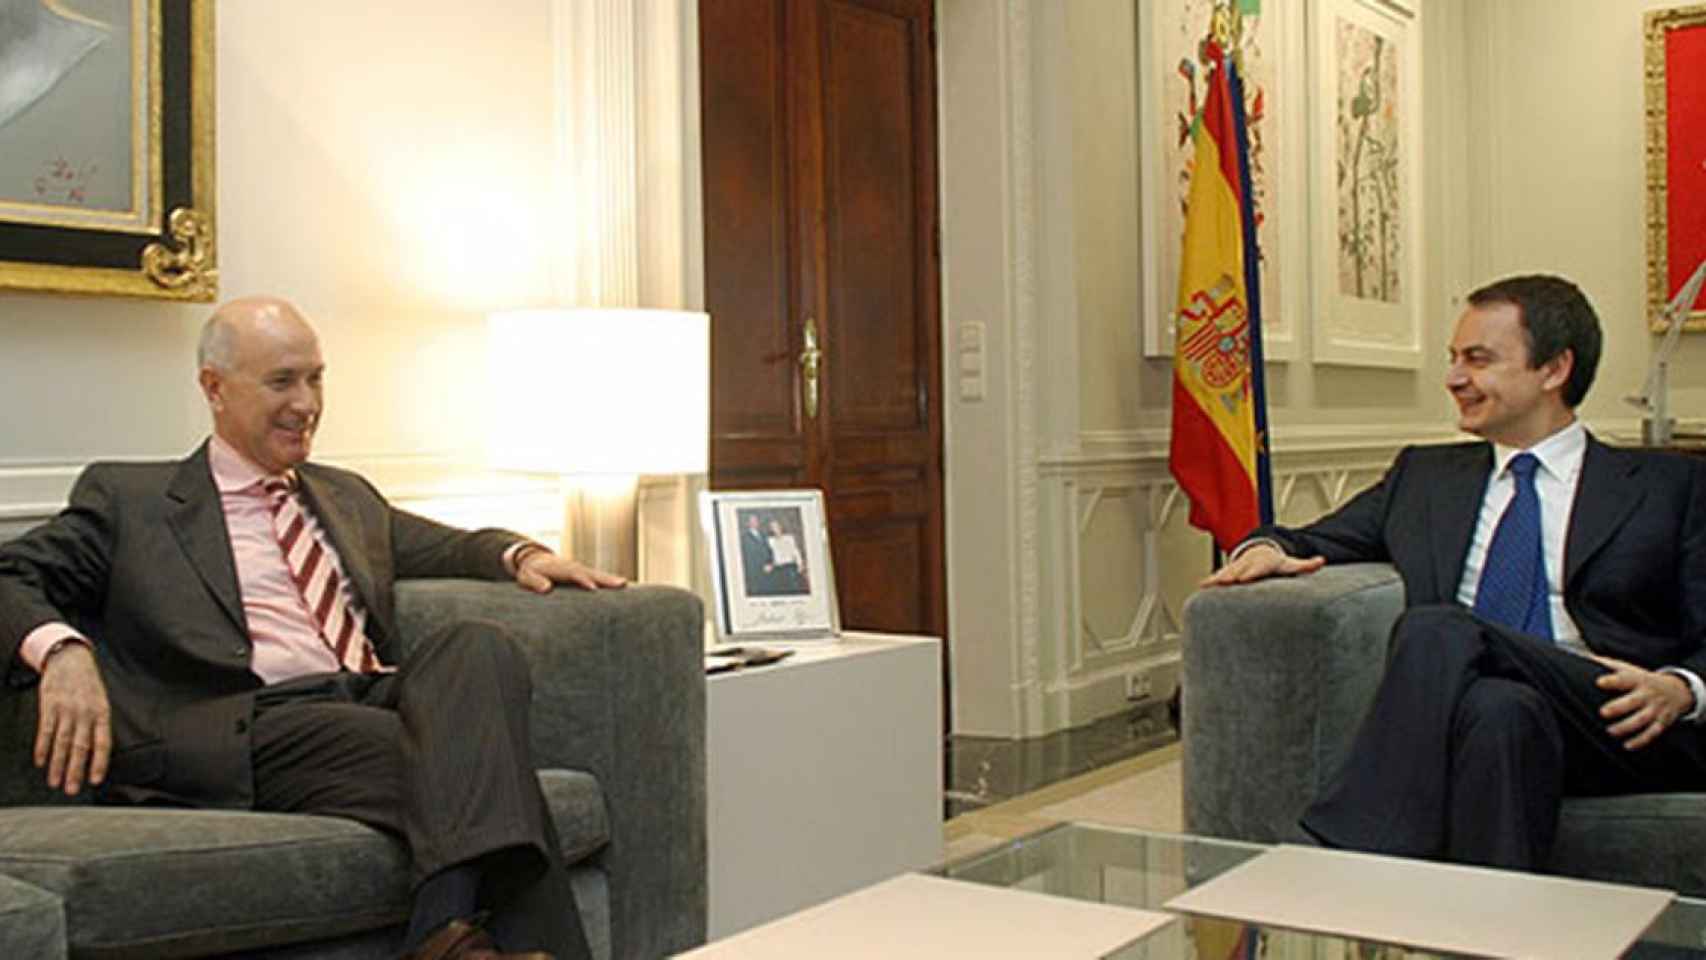 El exlíder de UDC, Josep Antoni Duran i Lleida (i), reunido con el expresidente José Luís Rodríguez Zapatero / CG